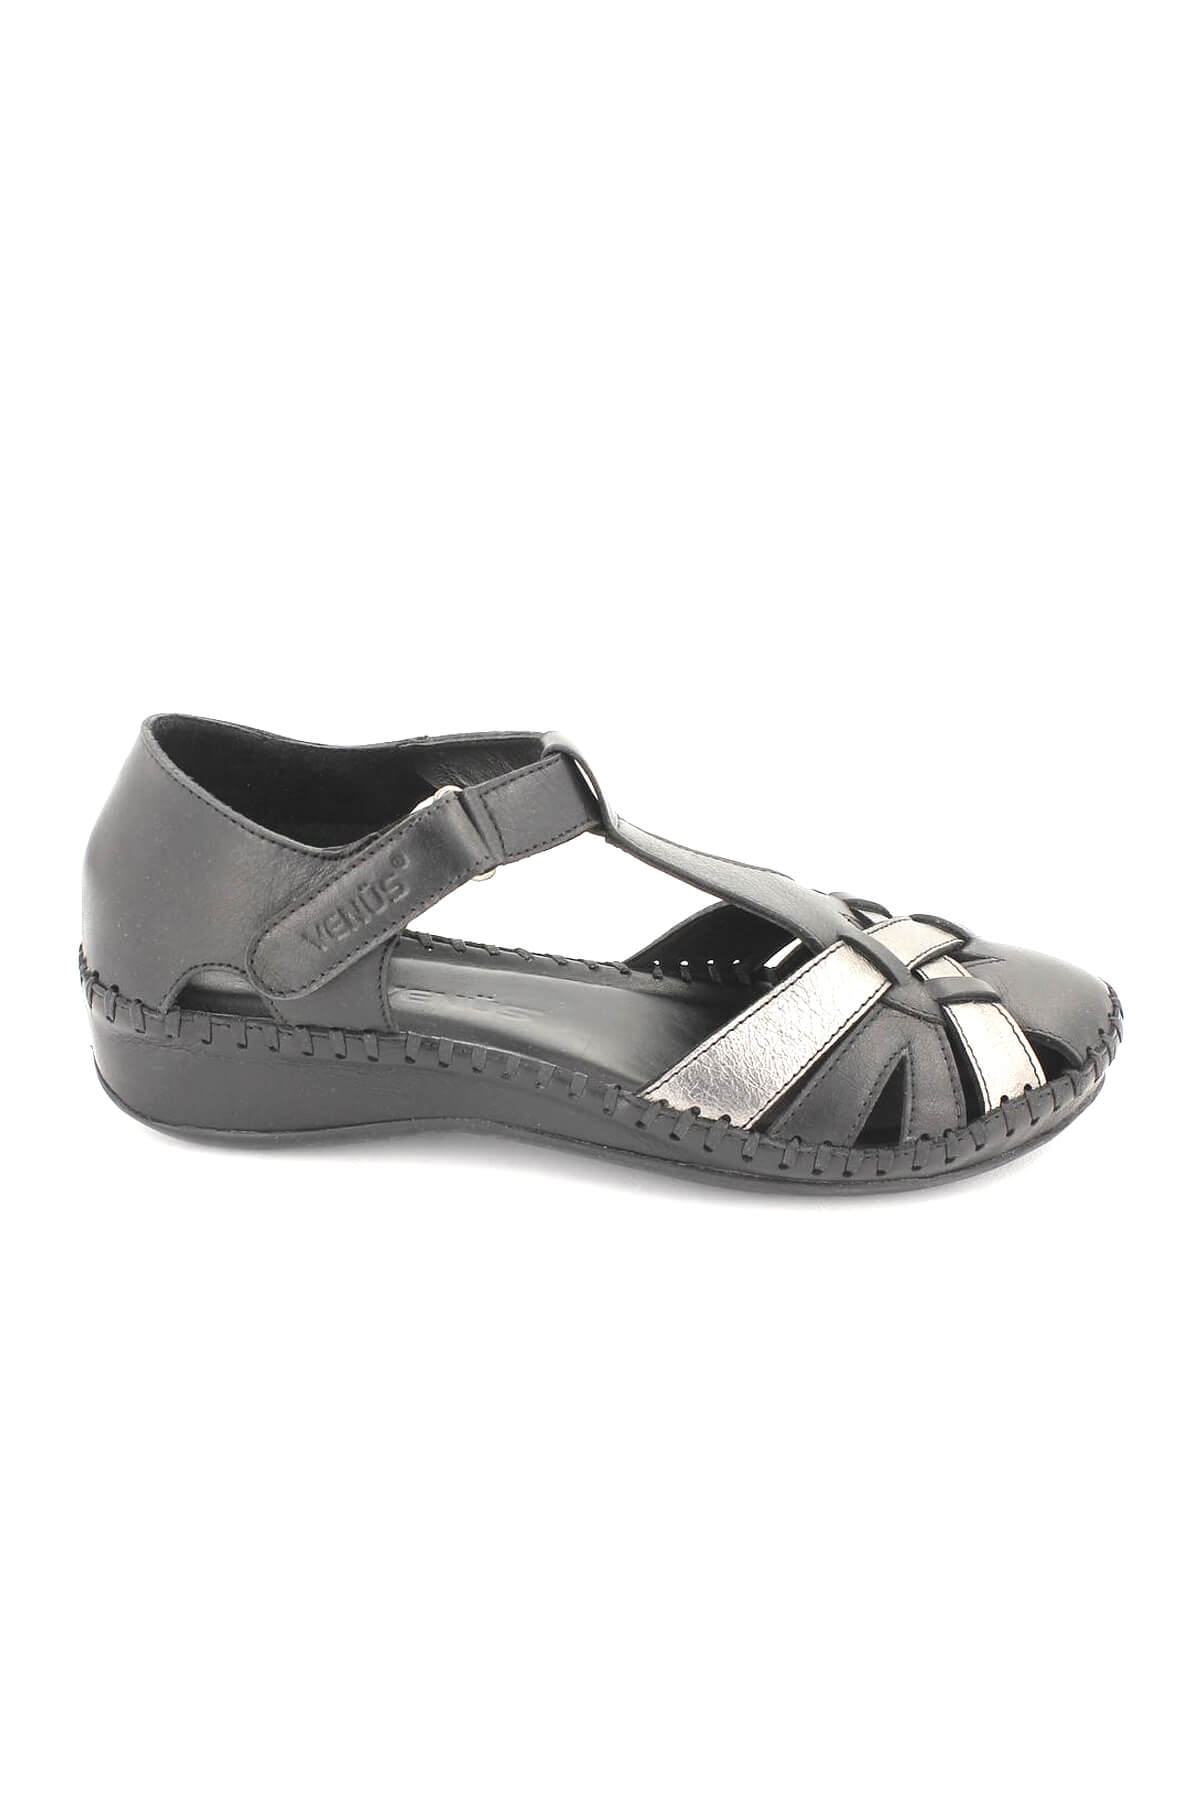 Kadın Comfort Deri Ayakkabı Siyah 18793008 - Thumbnail